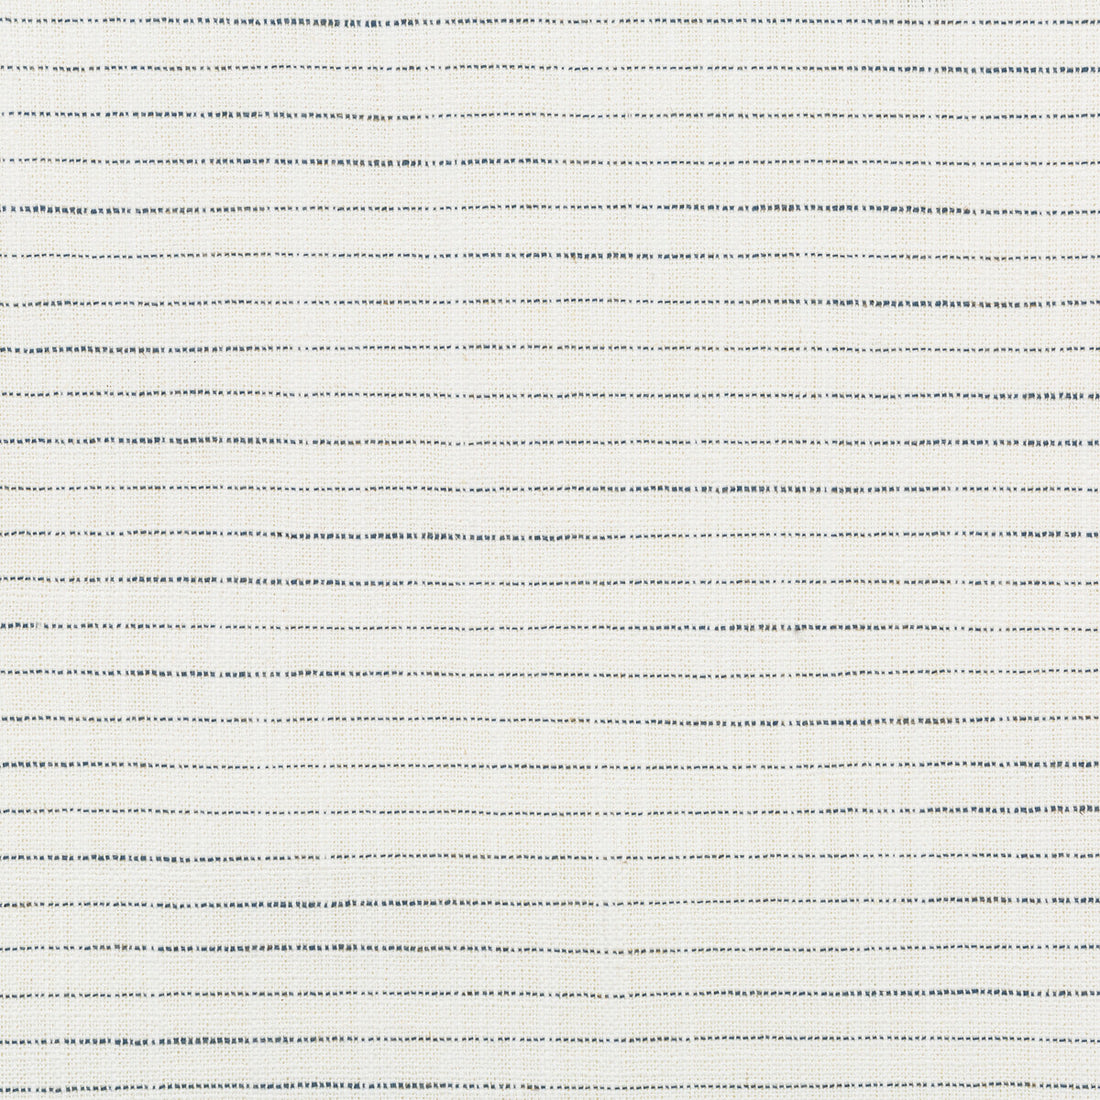 Kravet Basic fabric in 35931-15 color - pattern 35931.15.0 - by Kravet Basics in the Performance Kravetarmor collection